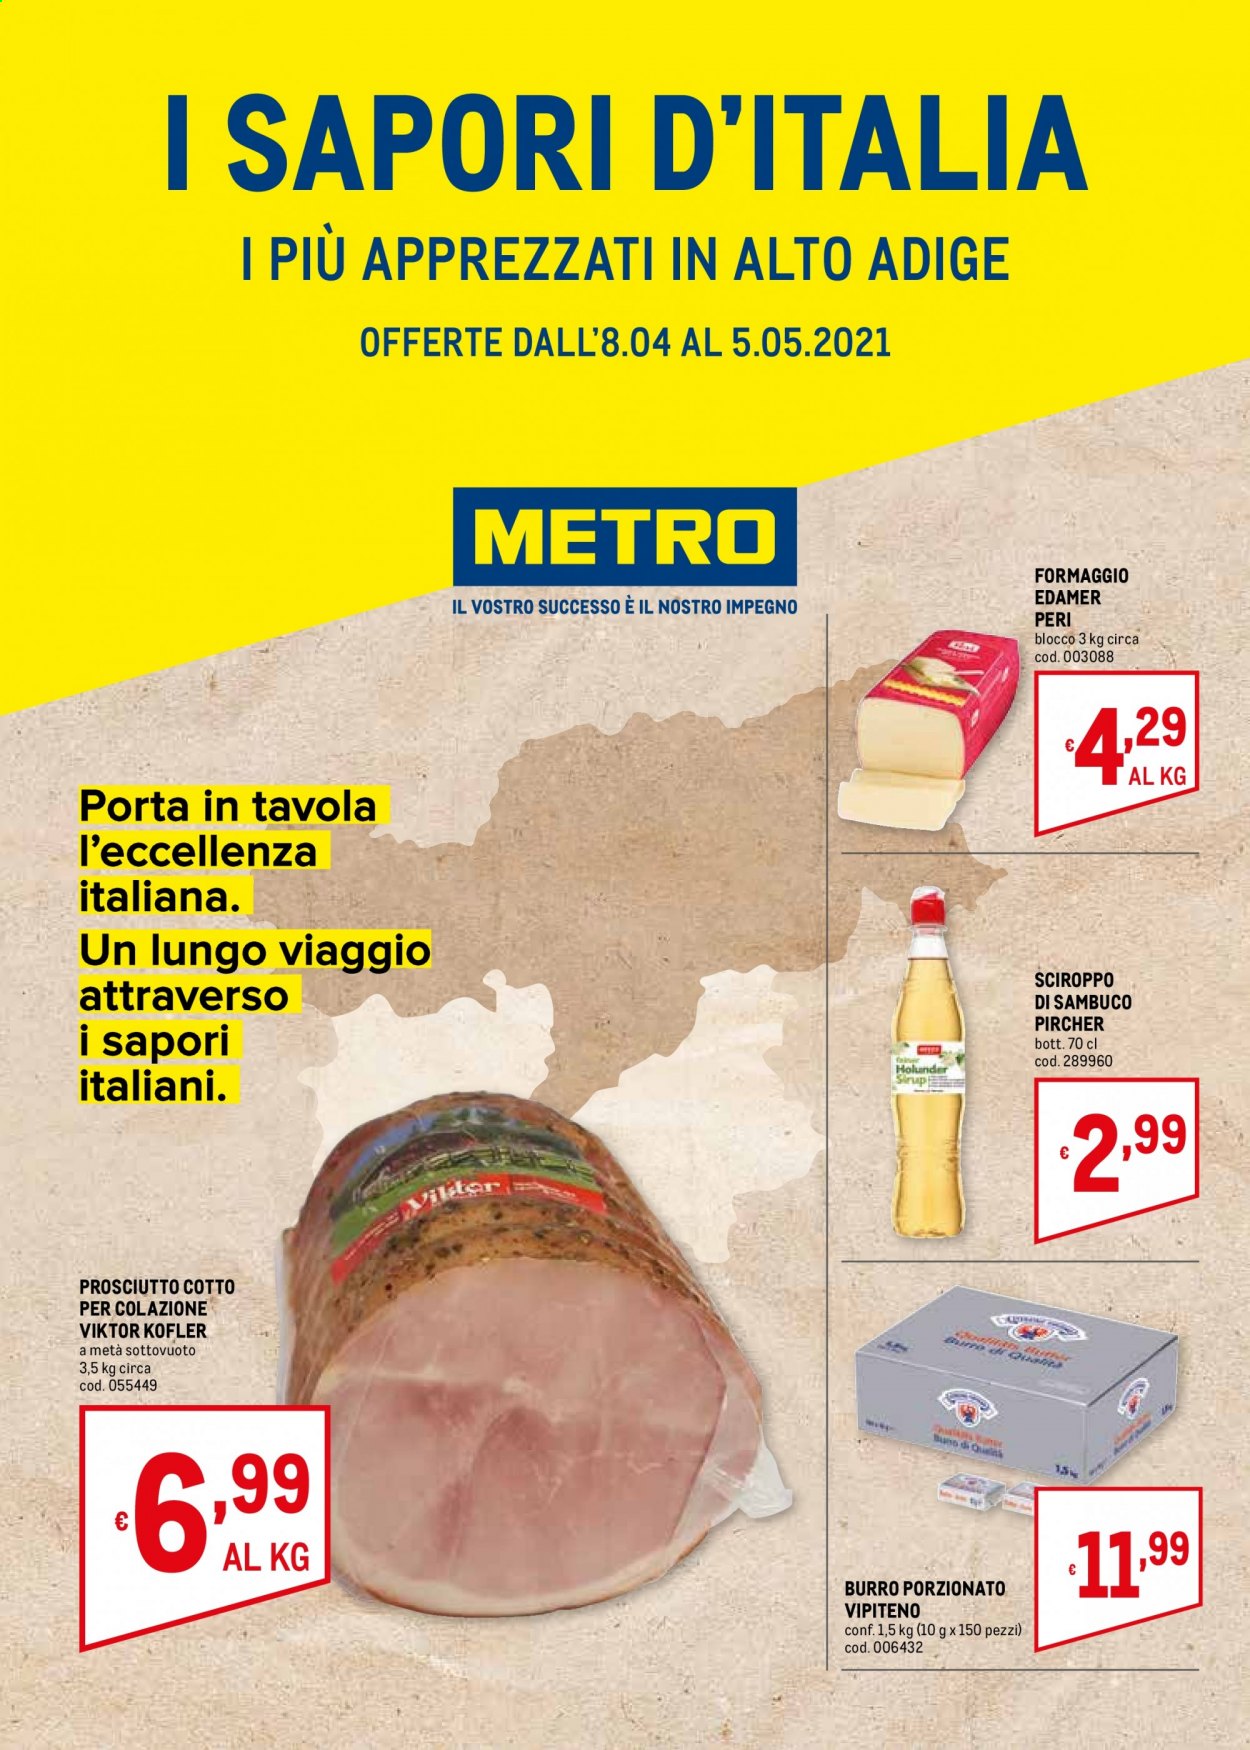 thumbnail - Volantino Metro - 8/4/2021 - 5/5/2021 - Prodotti in offerta - prosciutto, prosciutto cotto, formaggio, edam, burro, sciroppo, Pircher. Pagina 1.